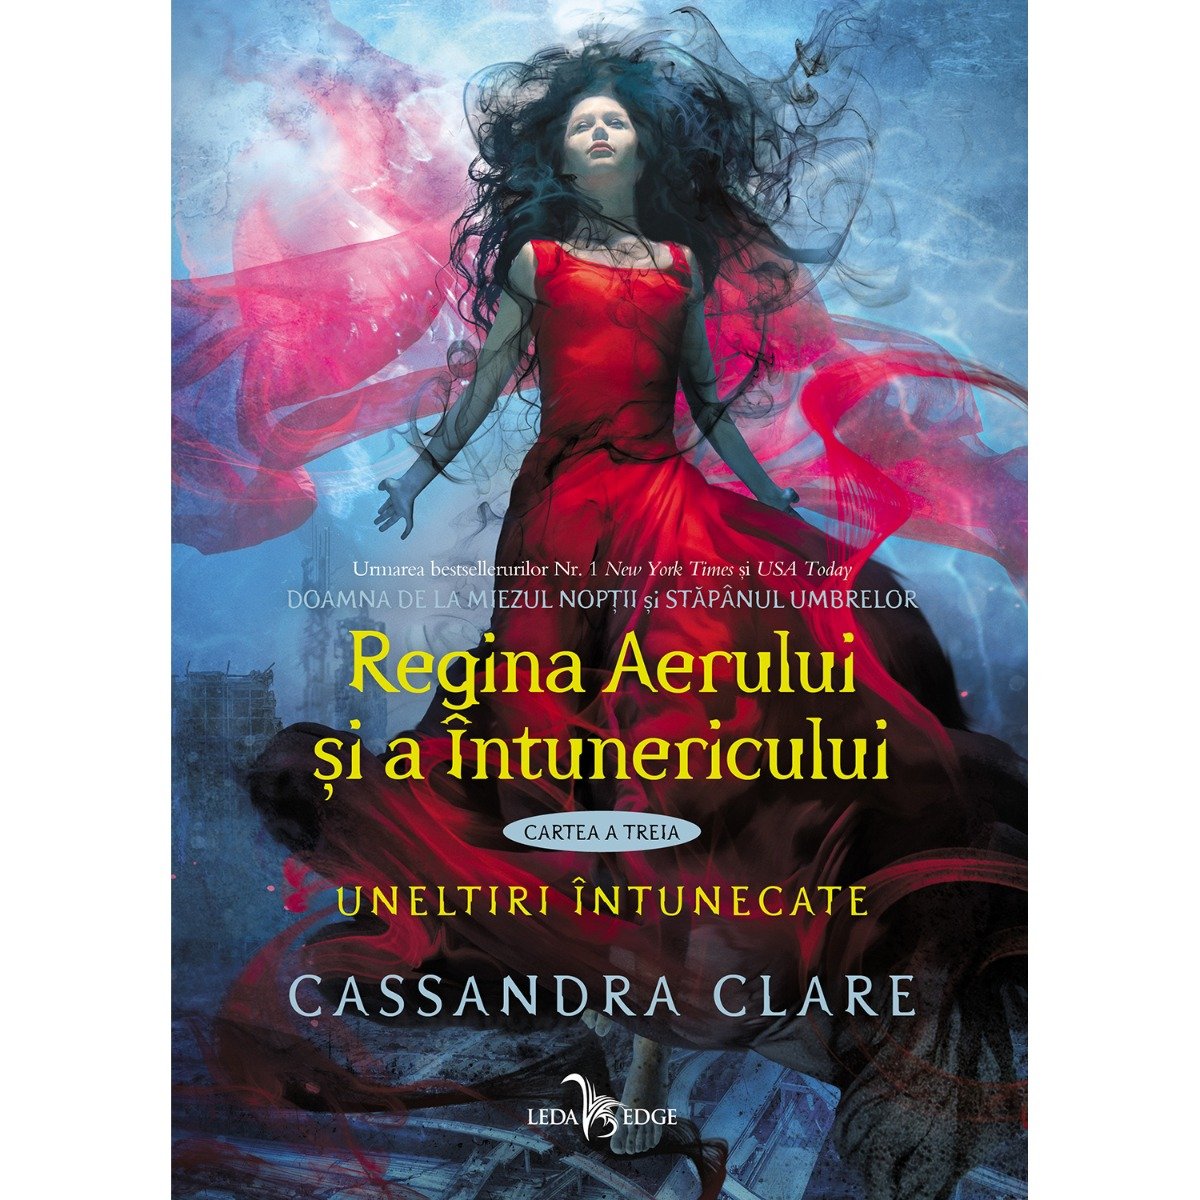 Carte Editura Corint, Uneltiri intunecate vol. 3 Regina aerului si a intunericului, Cassandra Clare